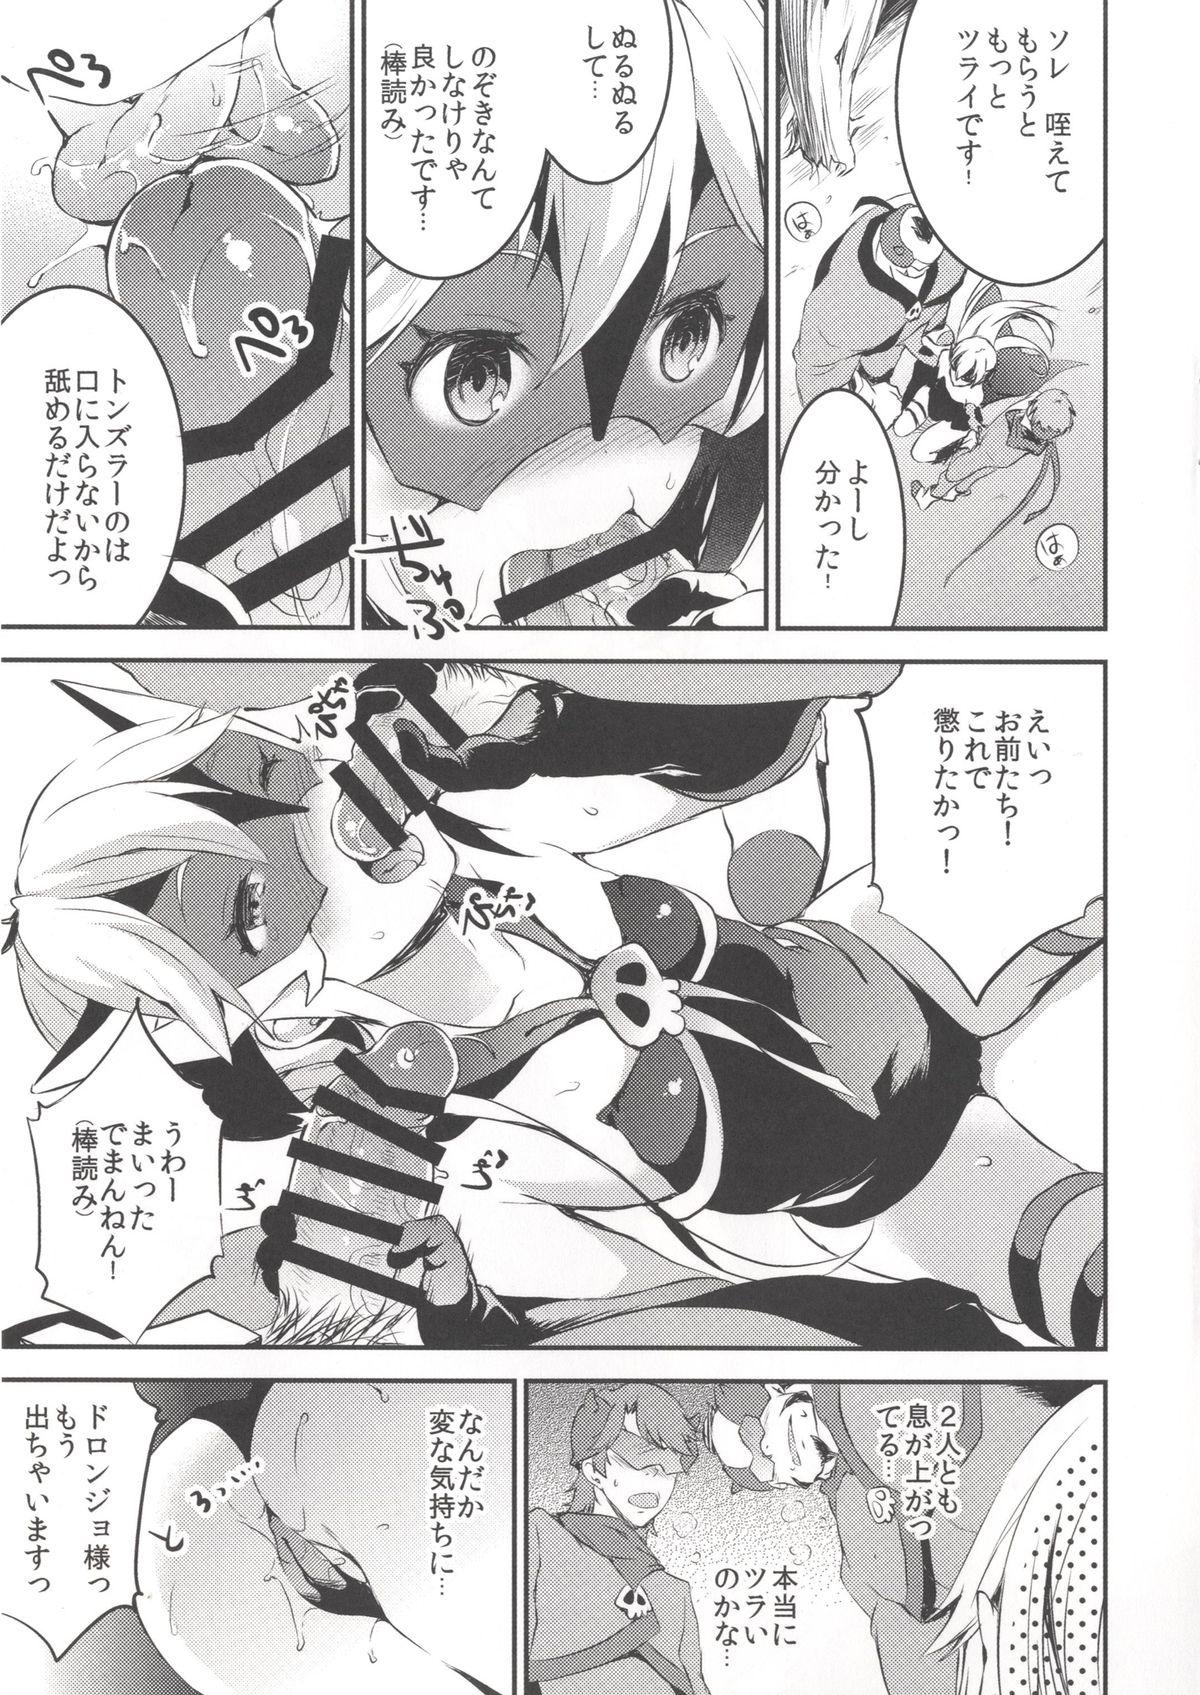 Furry Yoru no Oshioki! - Yoru no yatterman Orgasms - Page 7